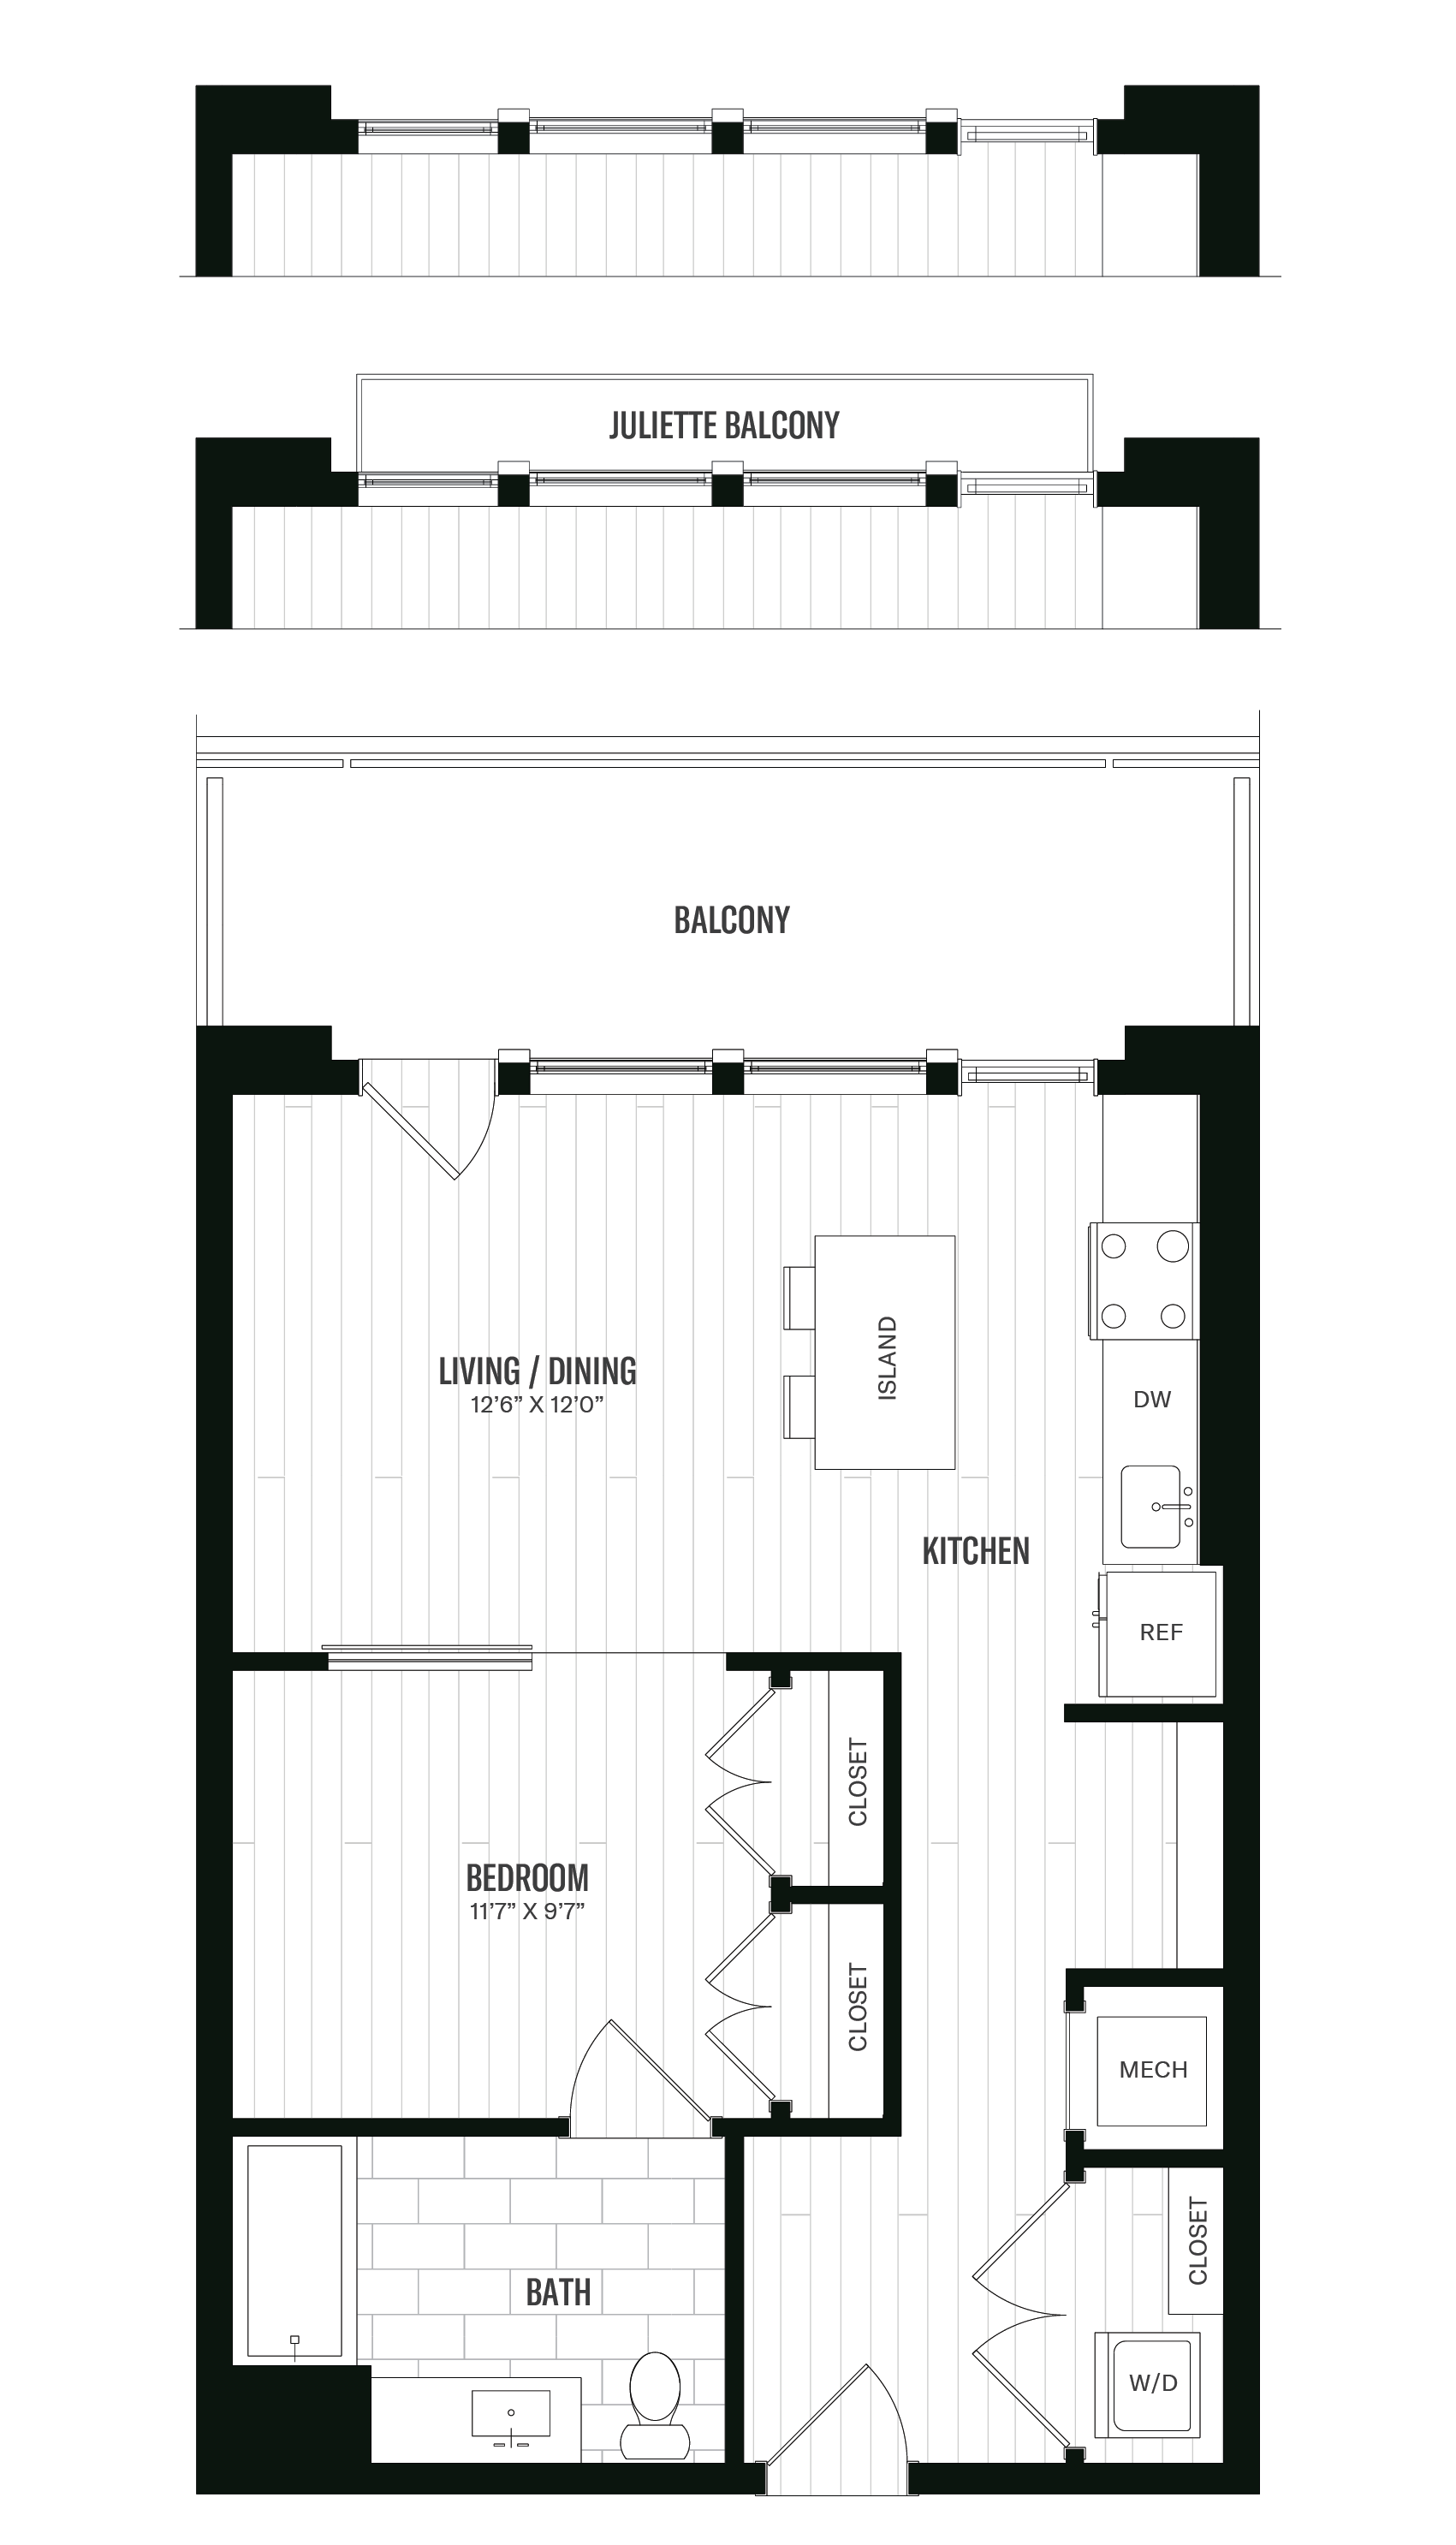 Floorplan image of unit 318